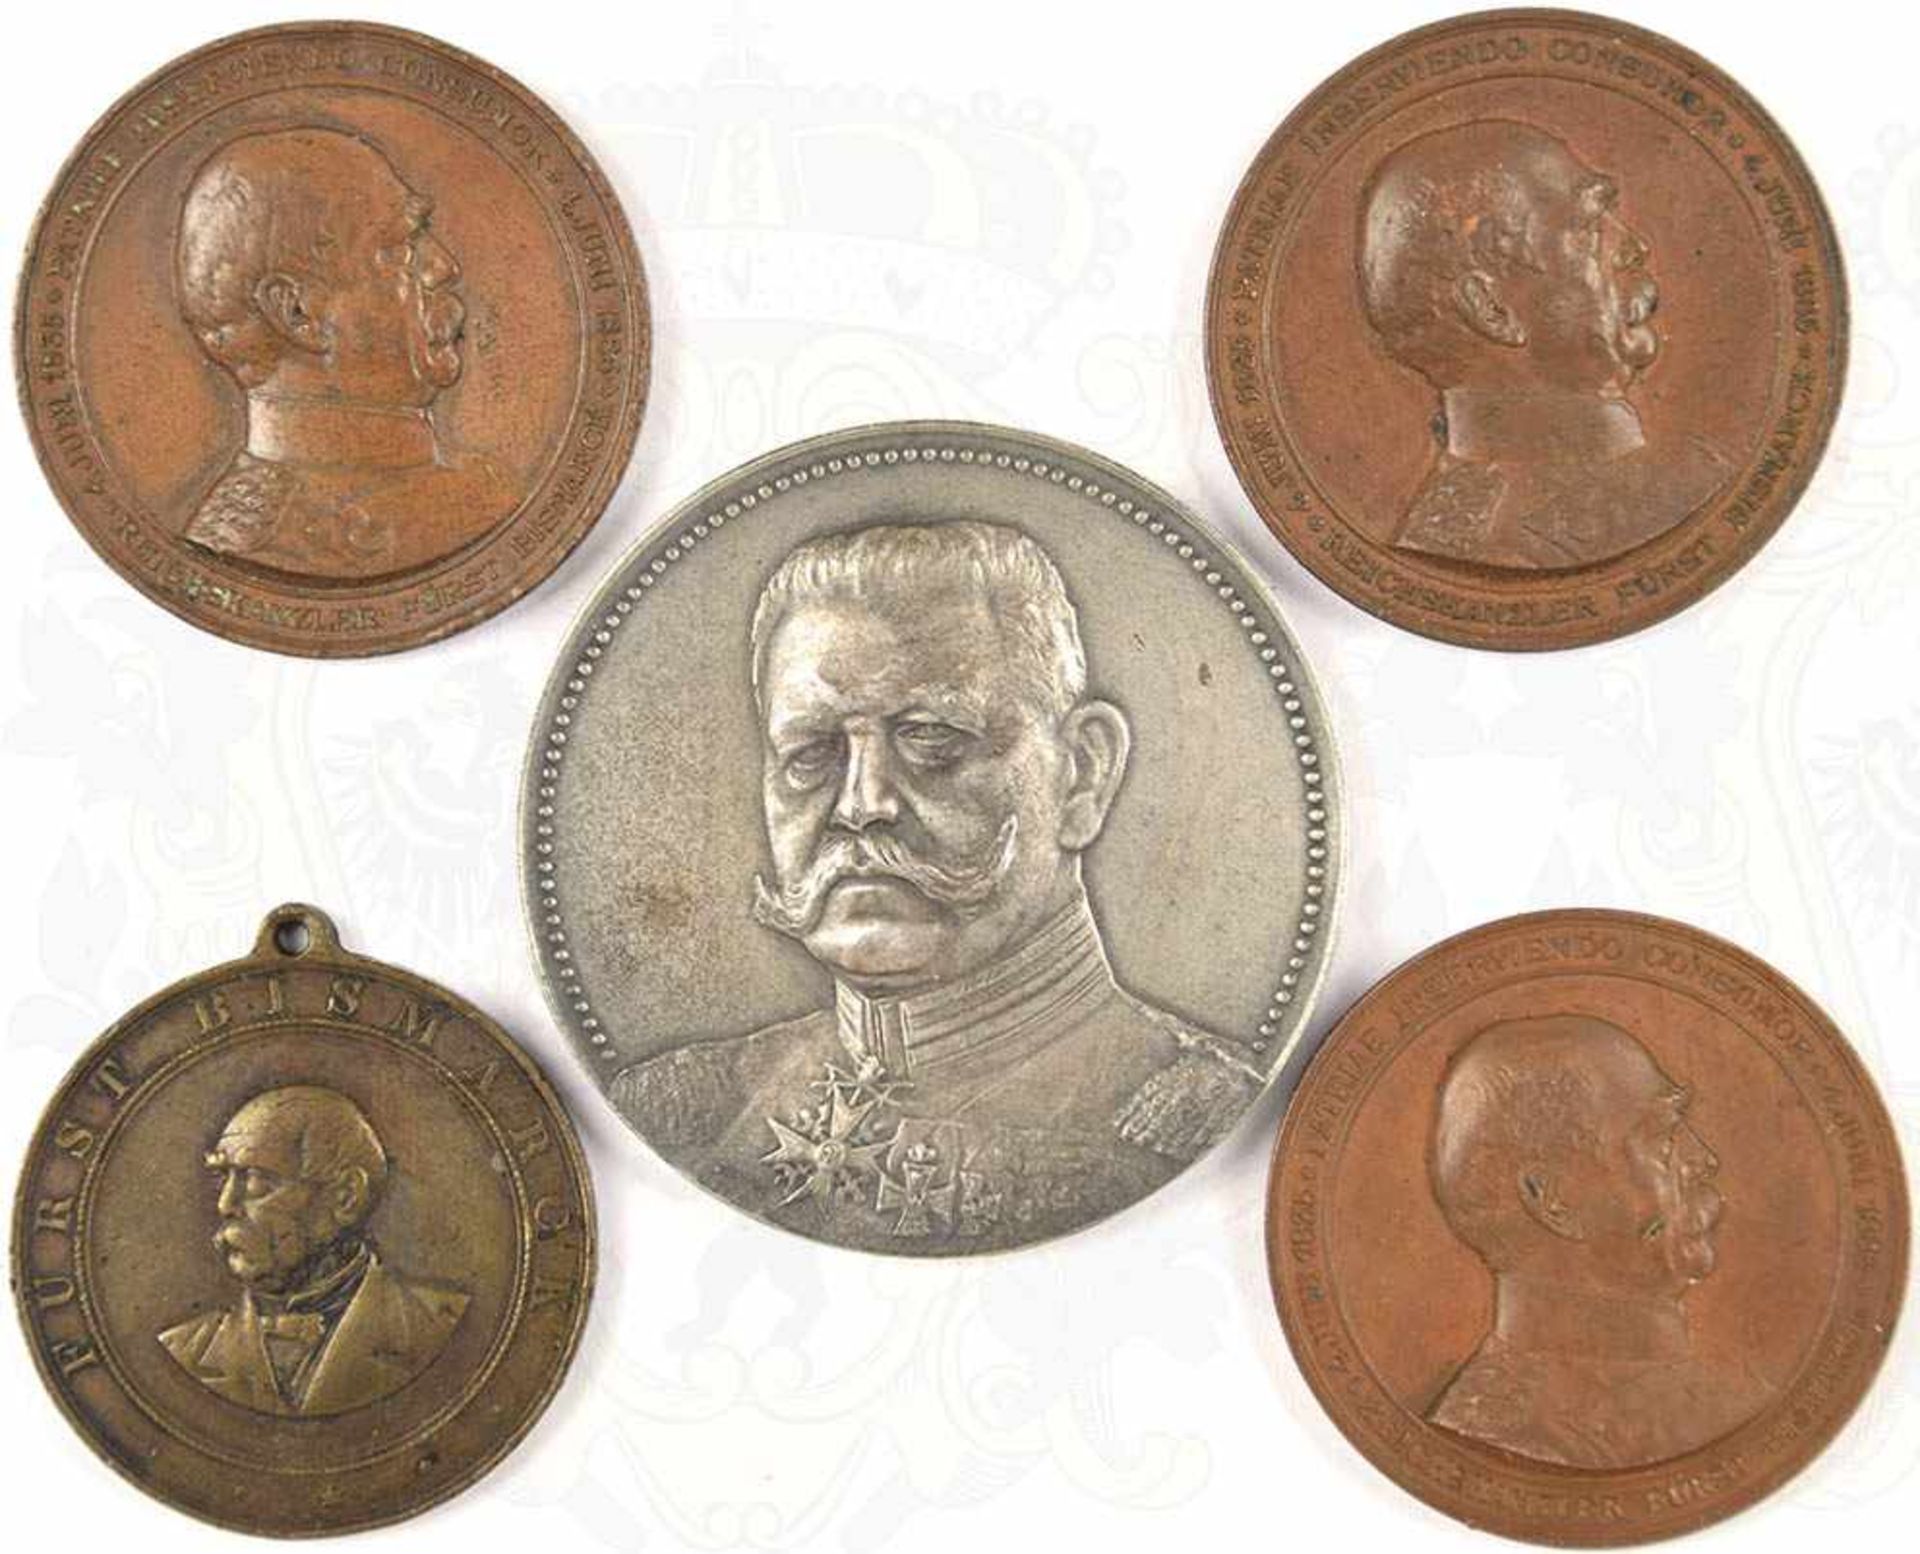 5 MEDAILLEN, 4x Bronze, Fürst Bismarck, Gedenkmedaille z. Tode 1898, tragbar, sonst 3x z. 50jähr.